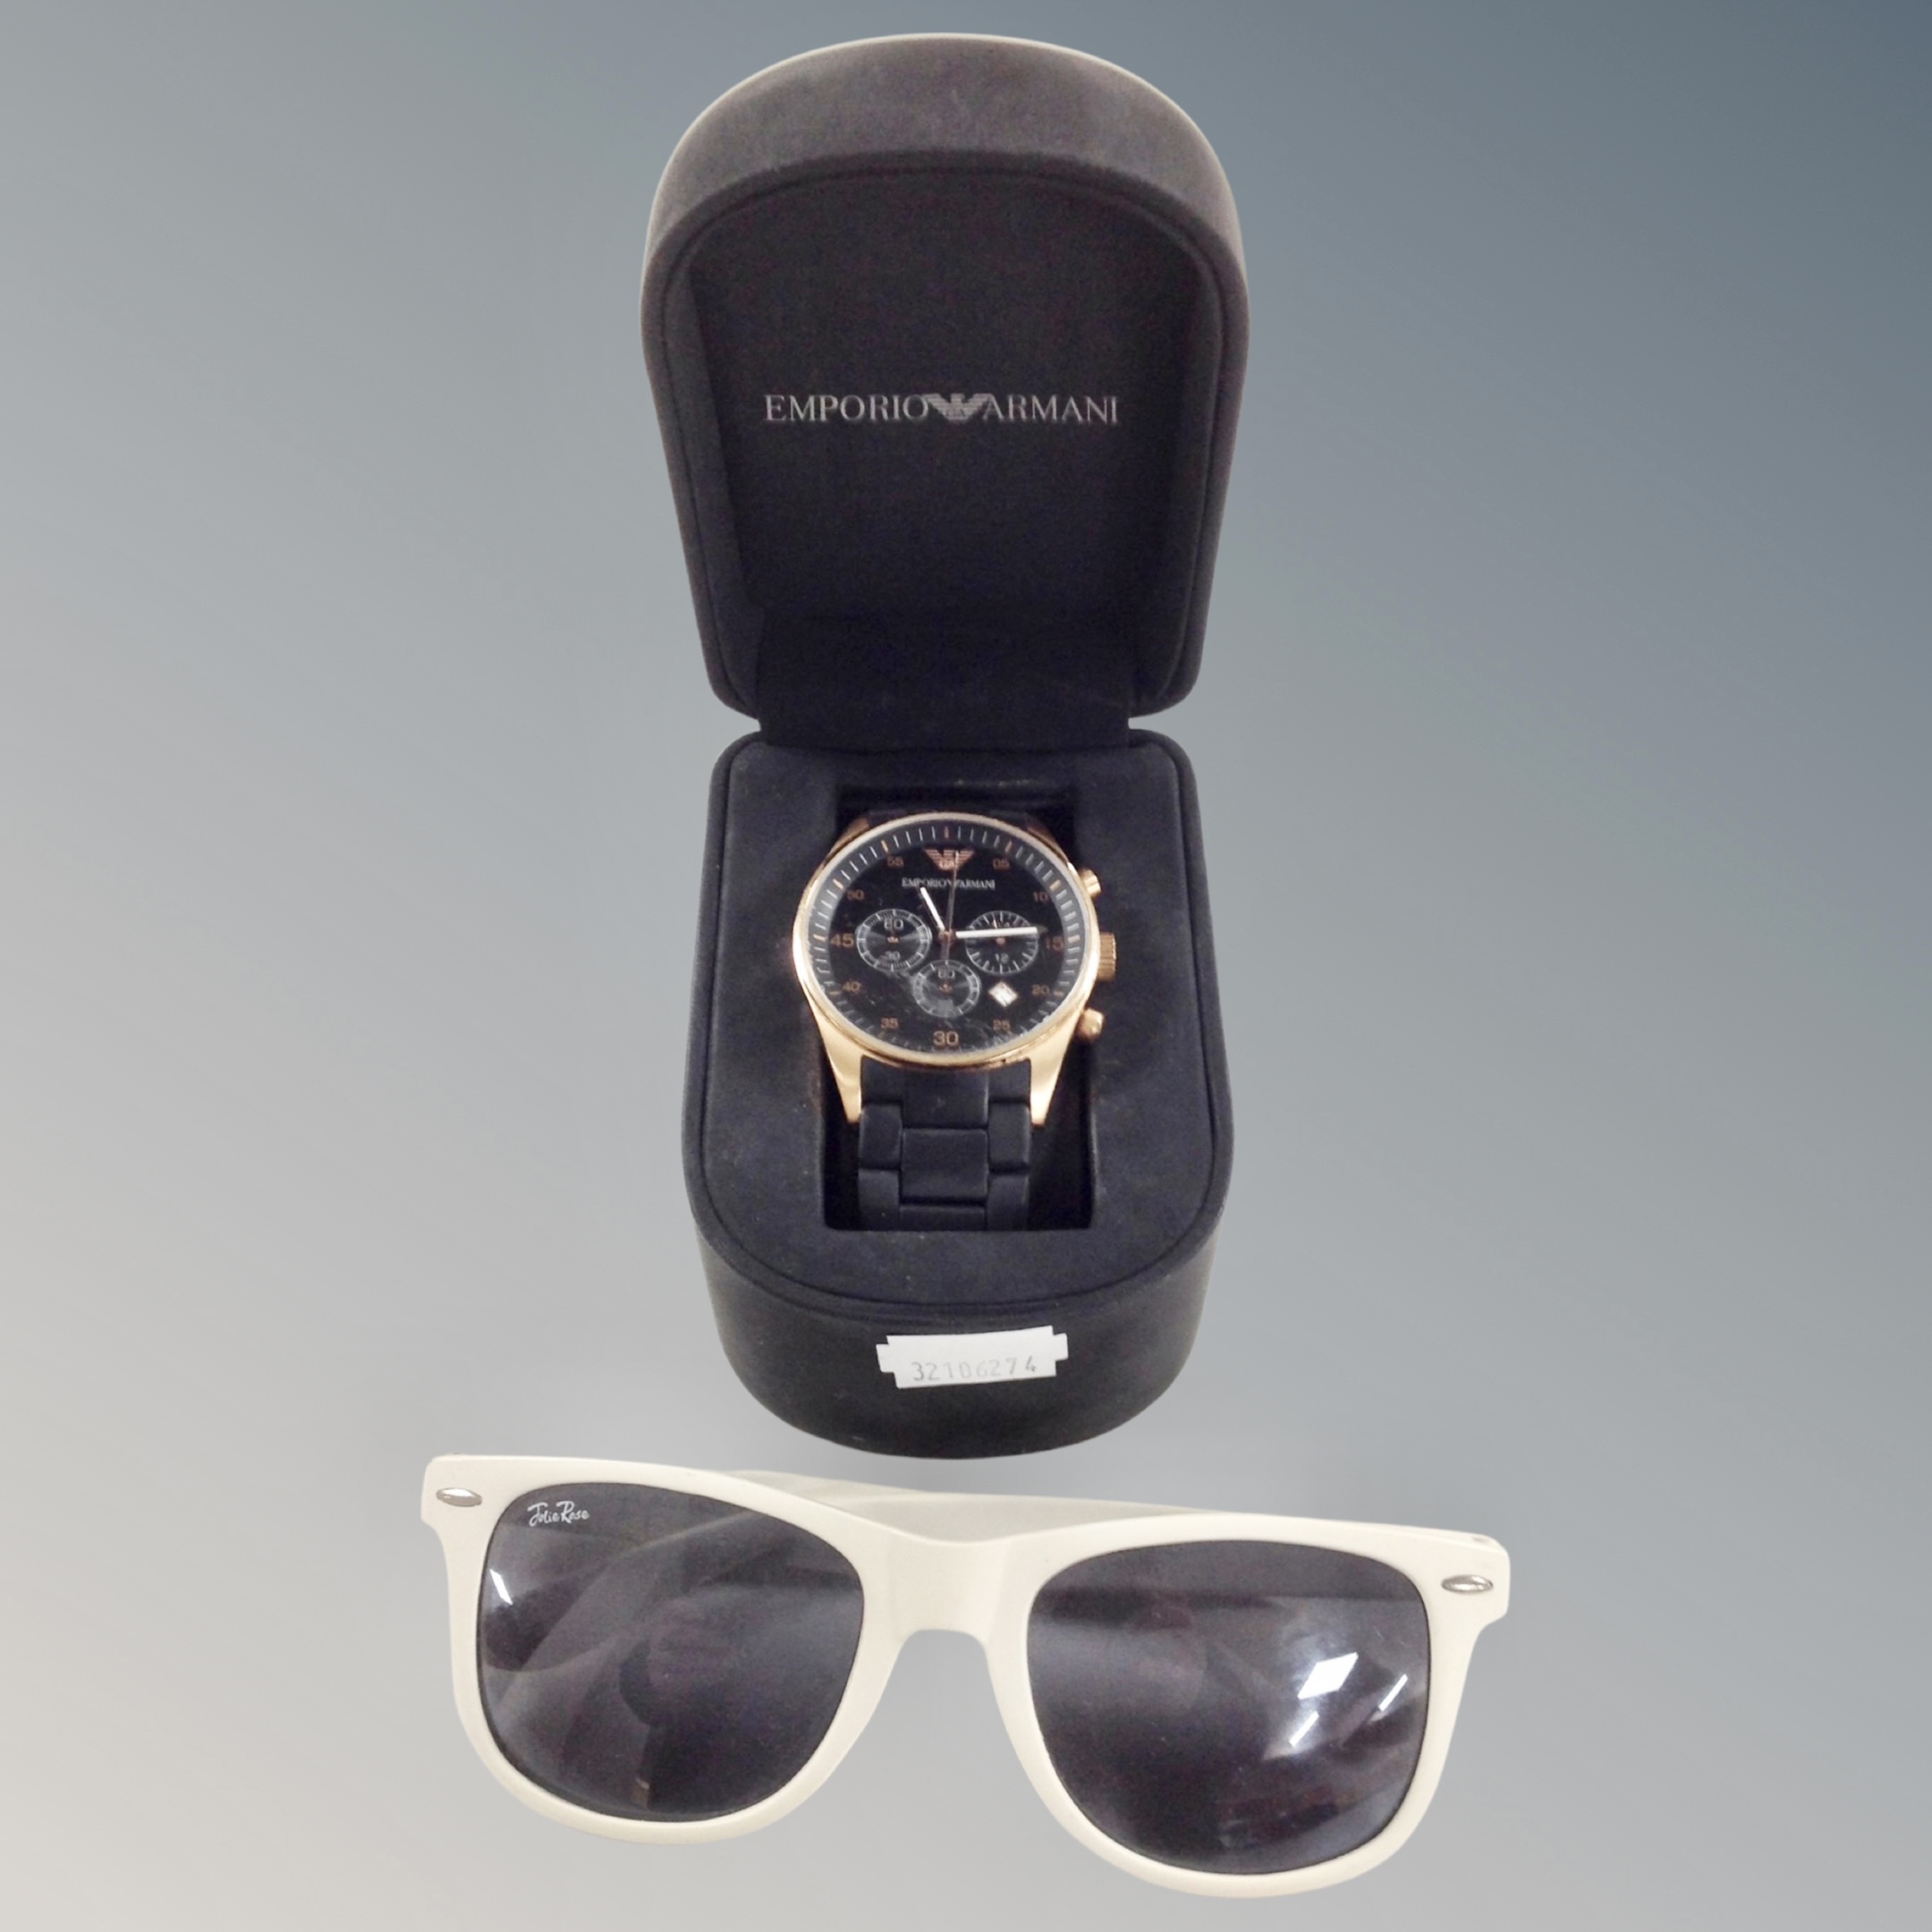 An Emporio Armani gentleman's wristwatch in original retail box,